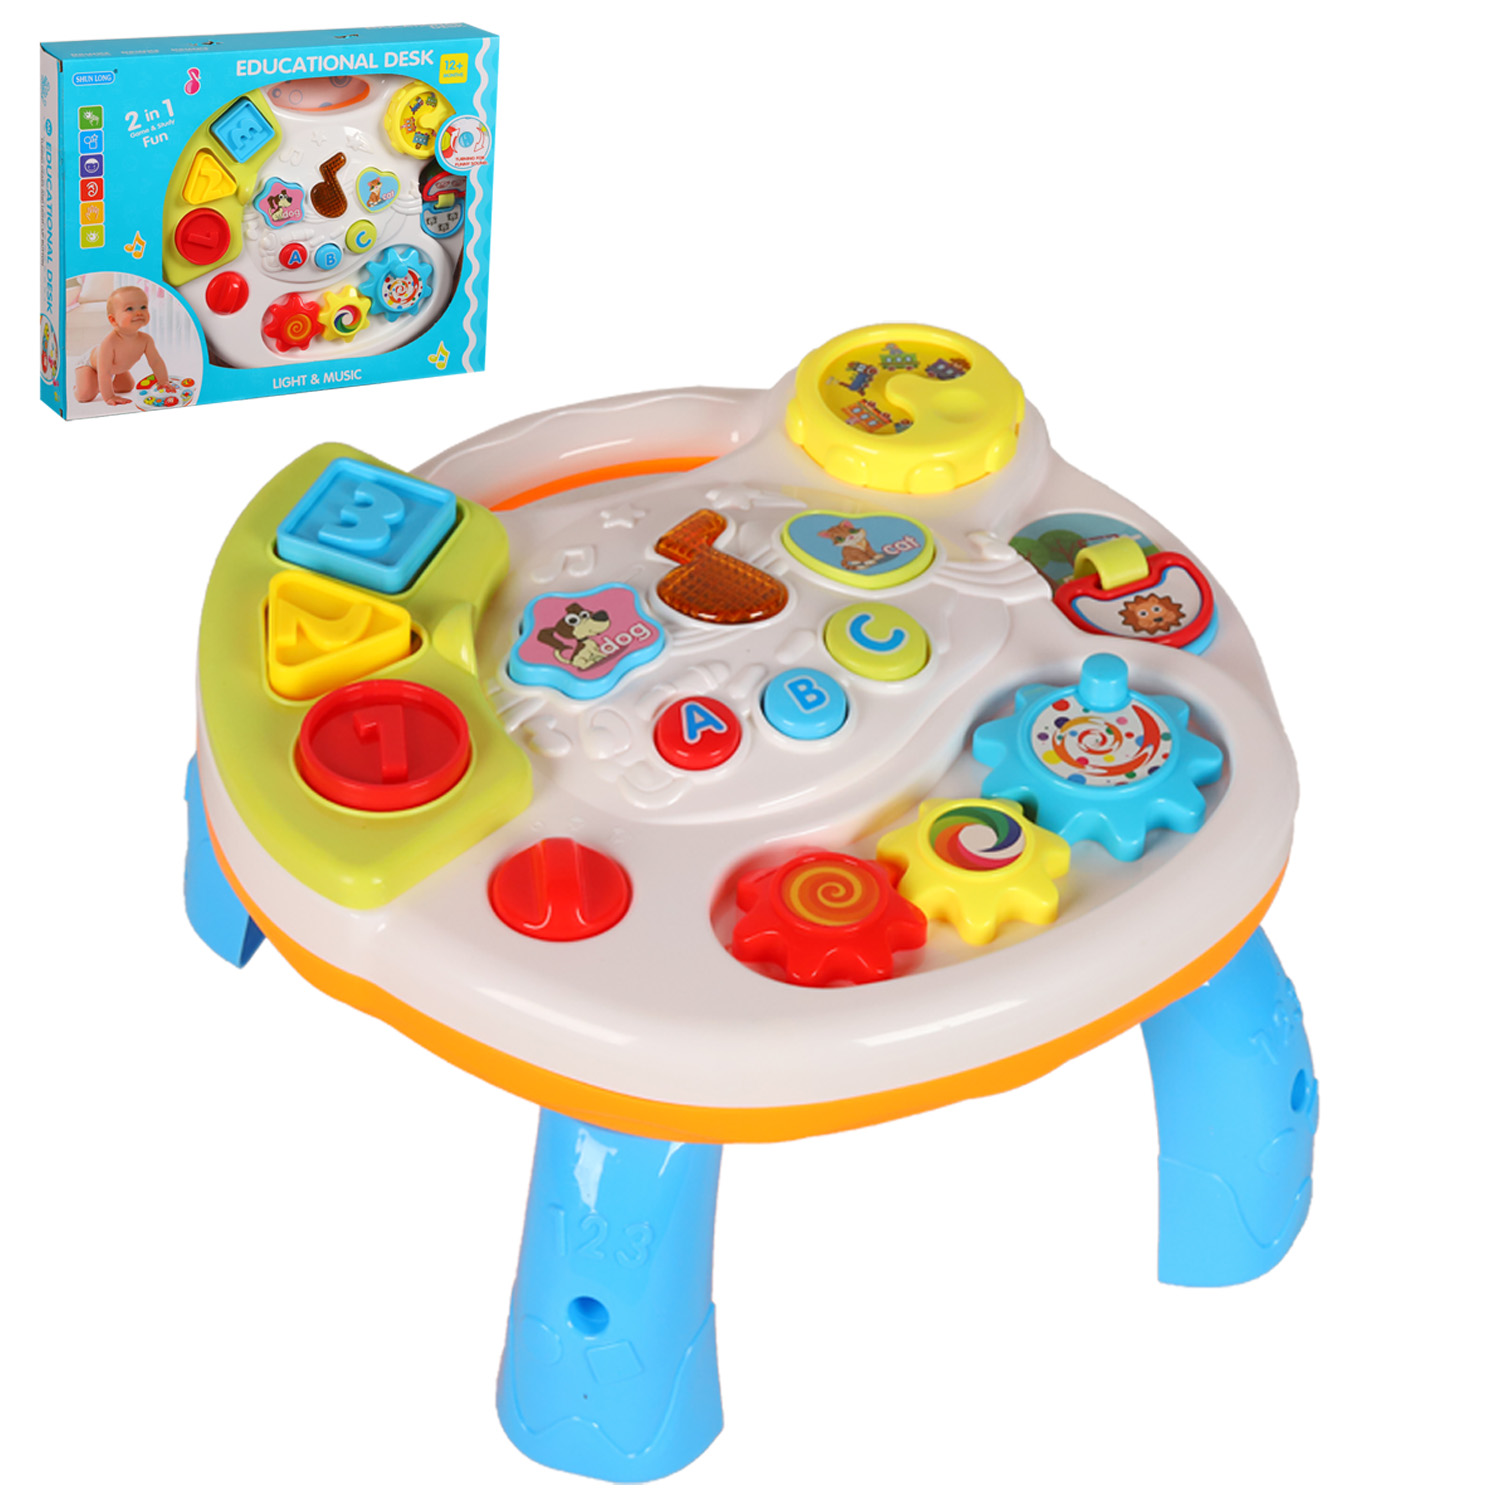 Развивающая игрушка Музыкальный стол, для малышей, JB0300425.